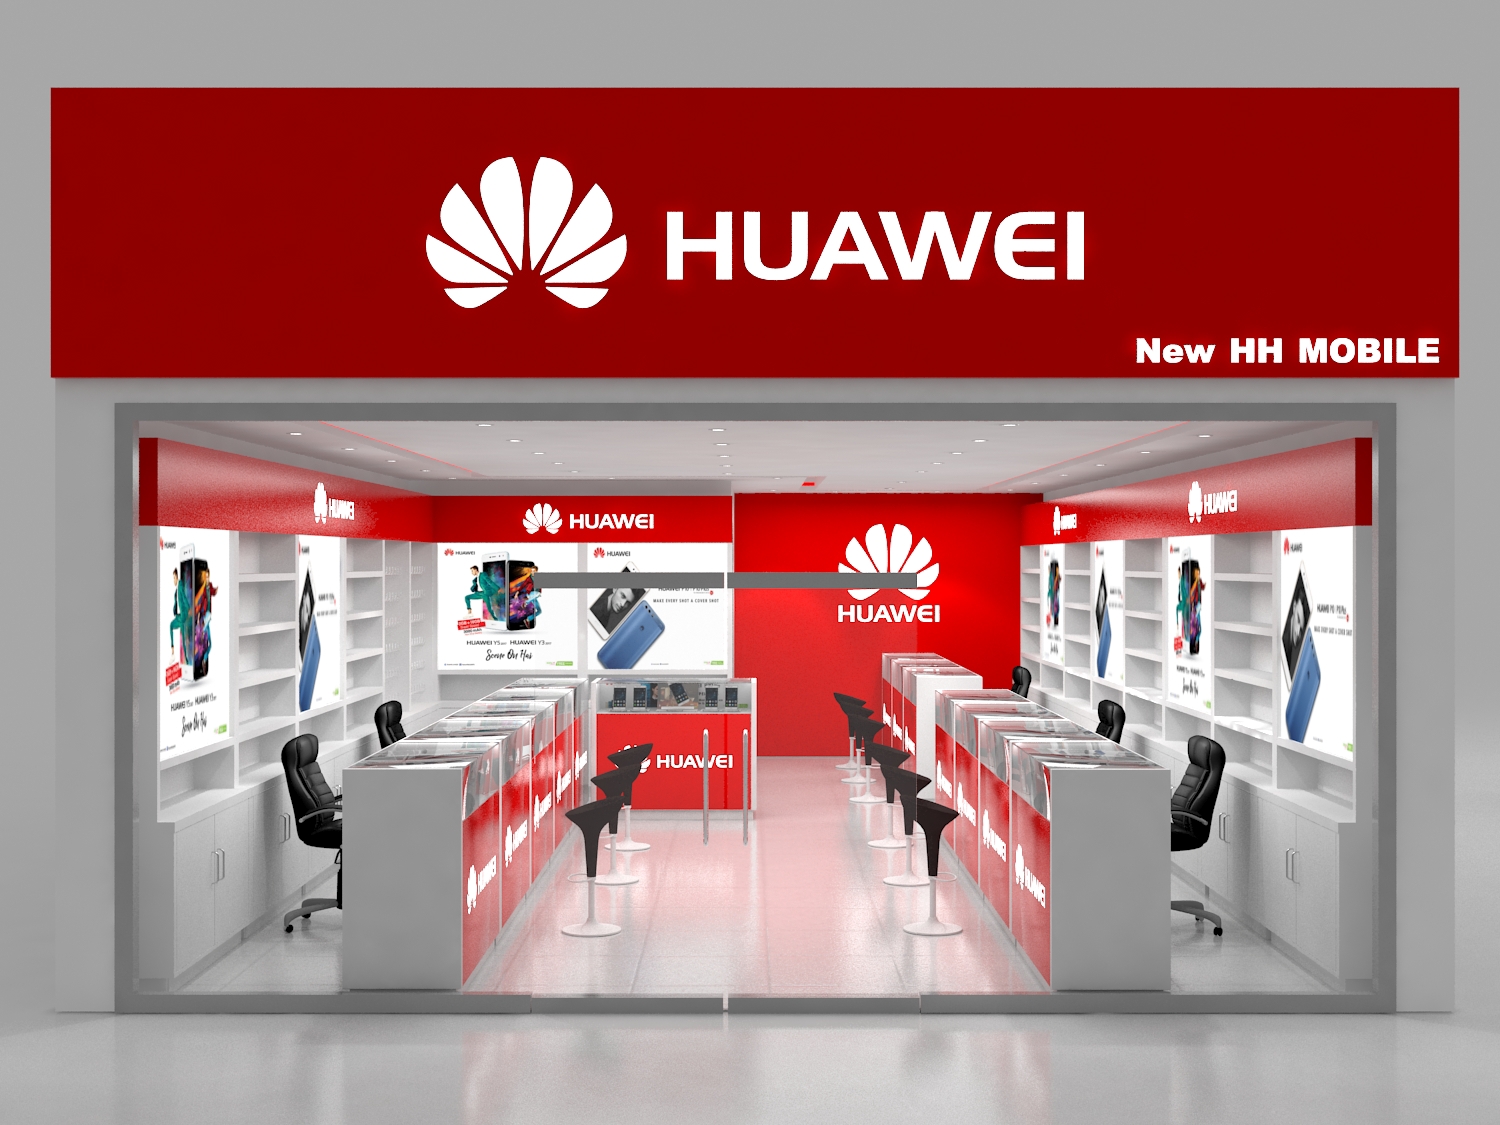 Купить huawei в магазине. Huawei магазин. Фирменный магазин Huawei. Фирменный магазин Хуавей.